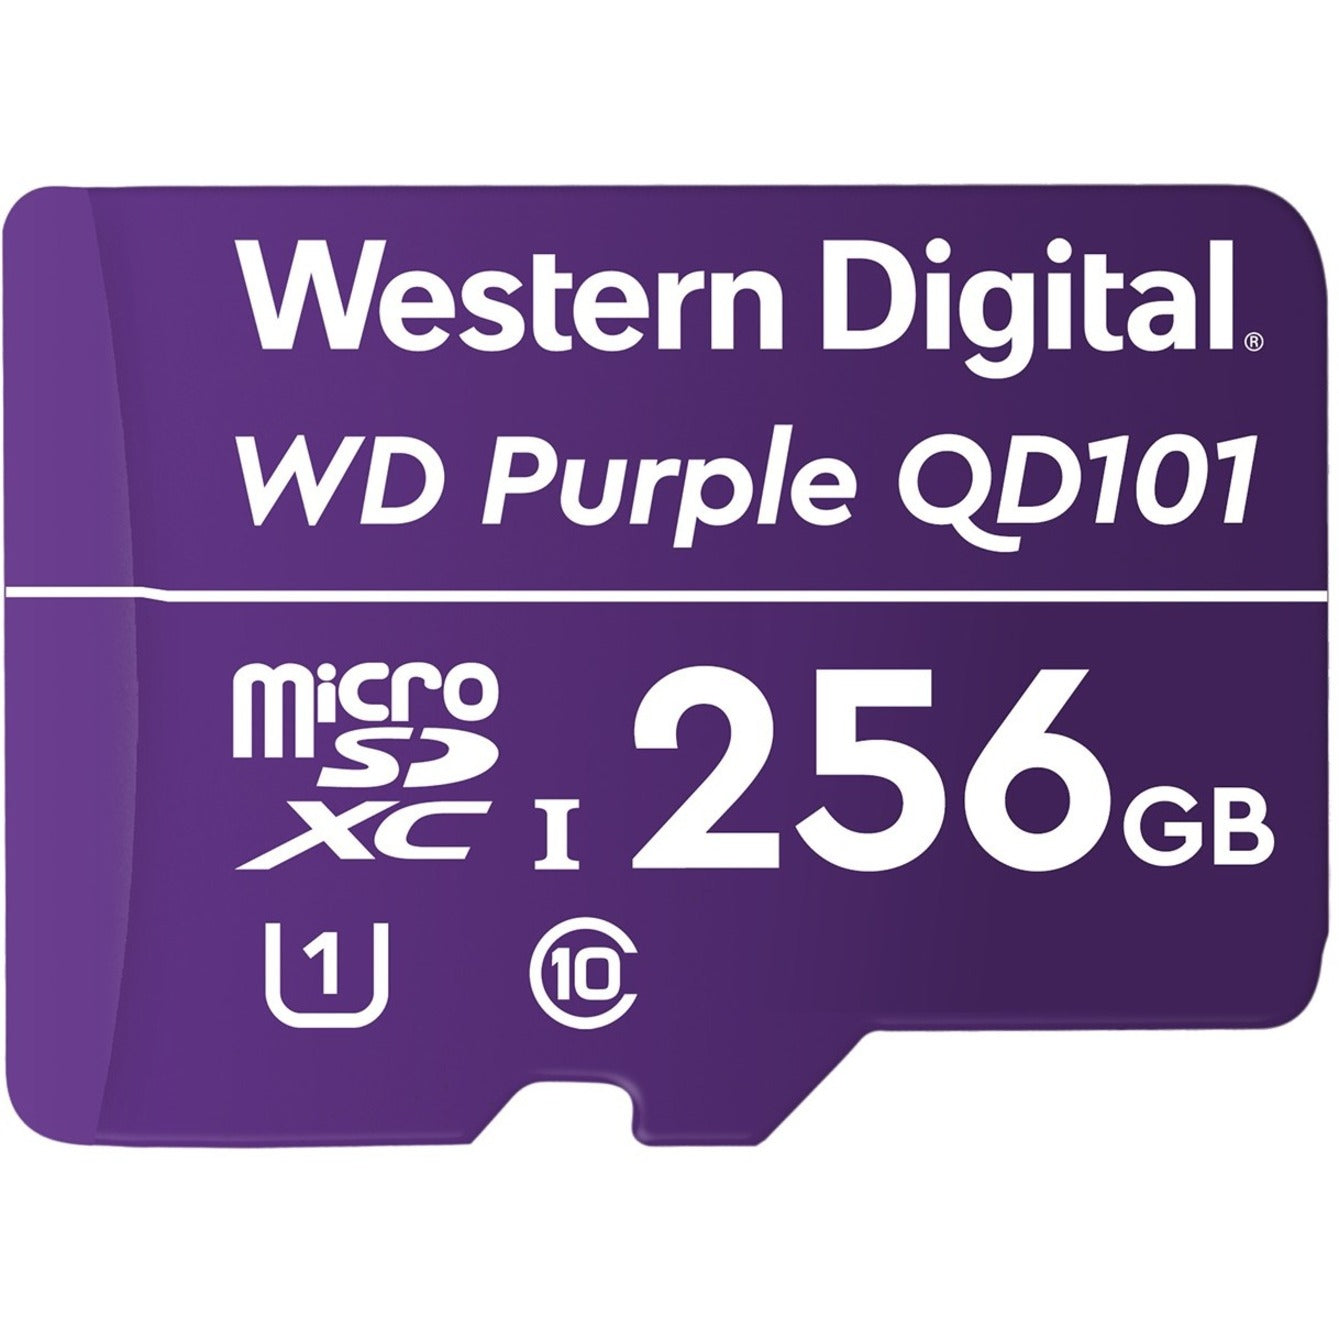 Western Digital WDD256G1P0C Purple™ SC QD101 256GB microSDXC, 3 Year Limited Warranty